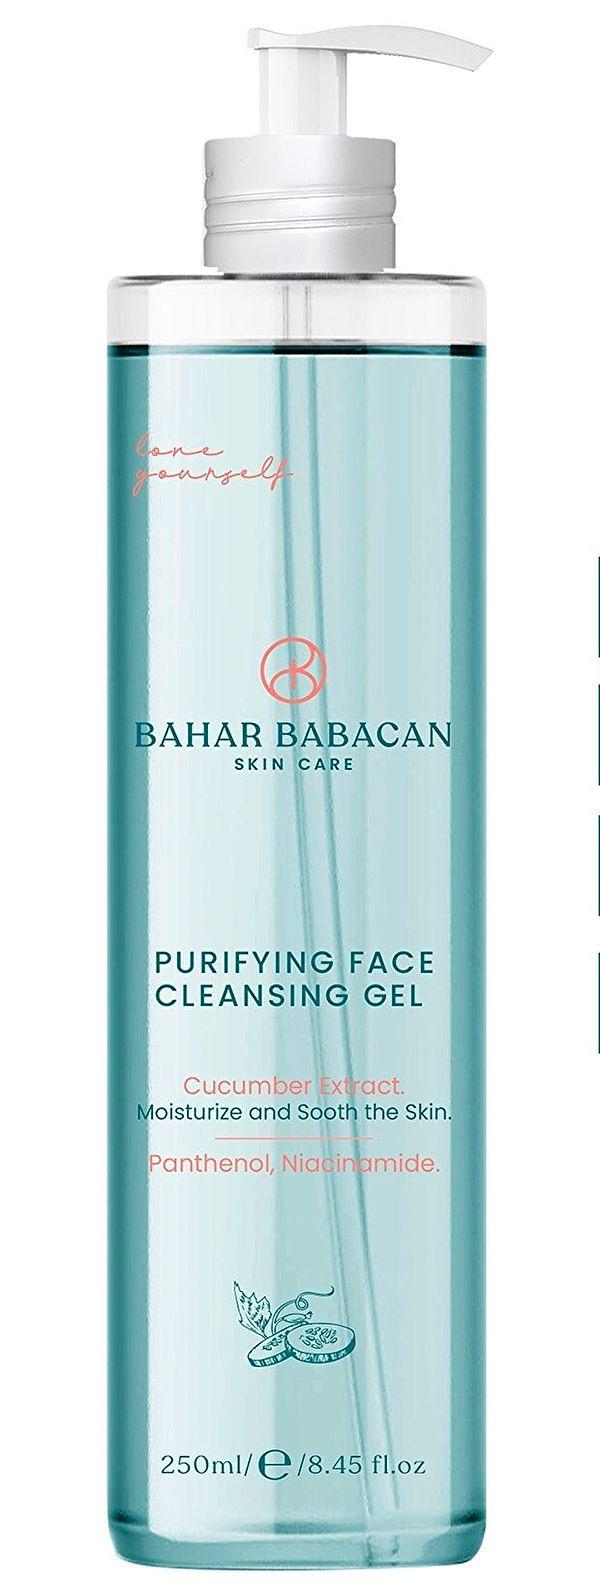 8. Bahar Babacan arındırıcı yüz temizleme jeli kullanıcıların önerisi.